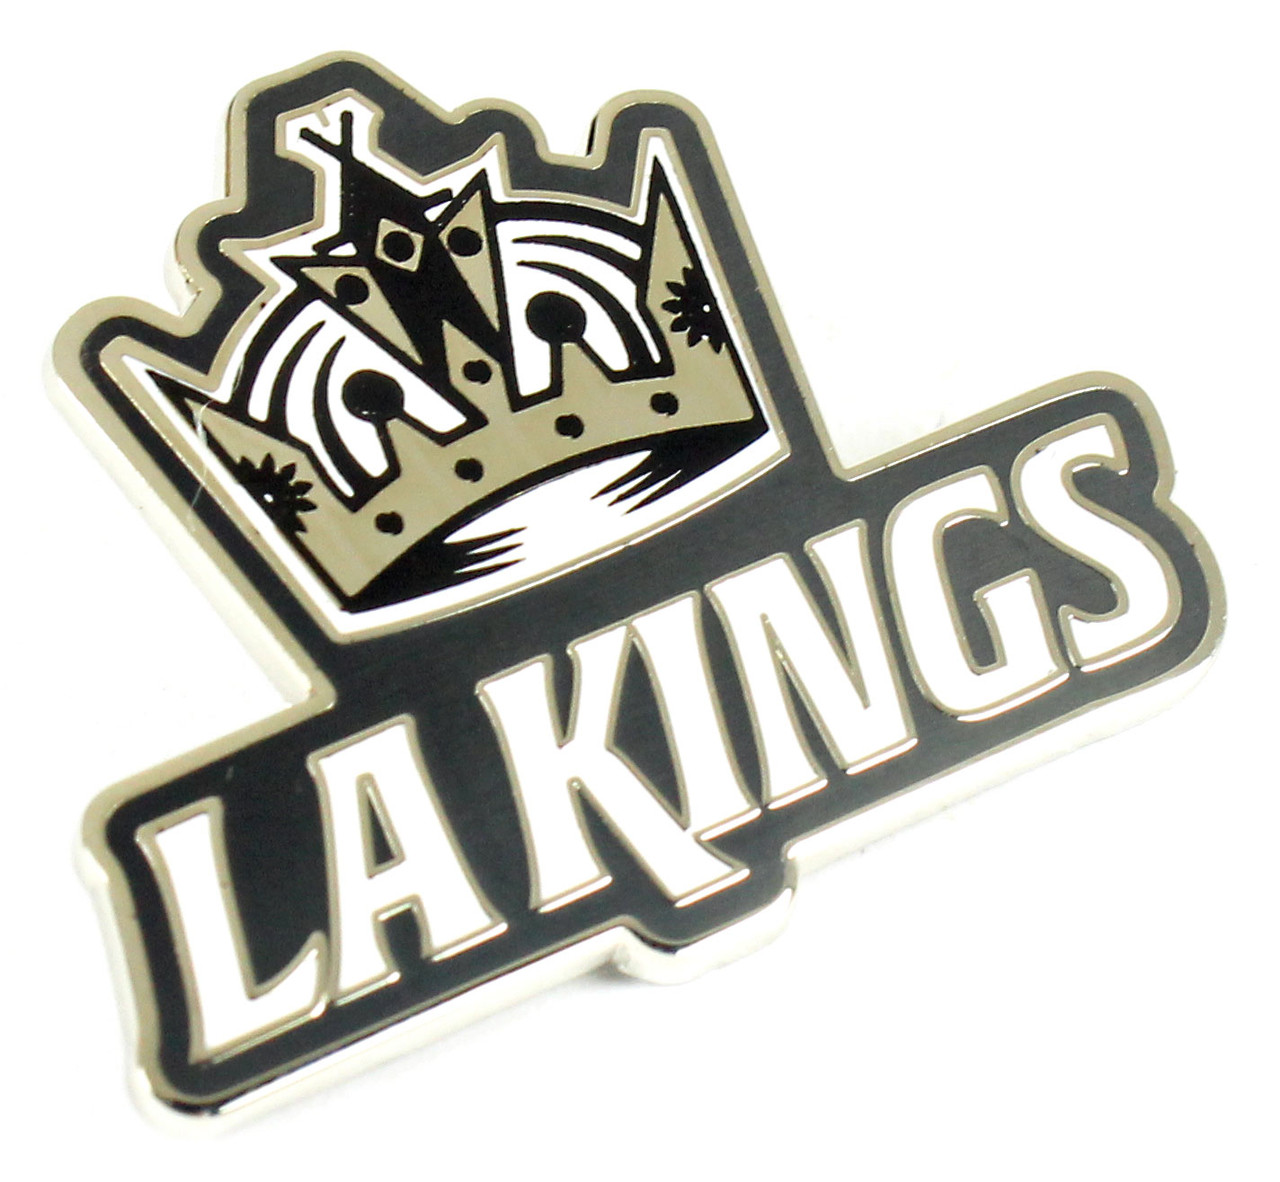 La Kings Logo 